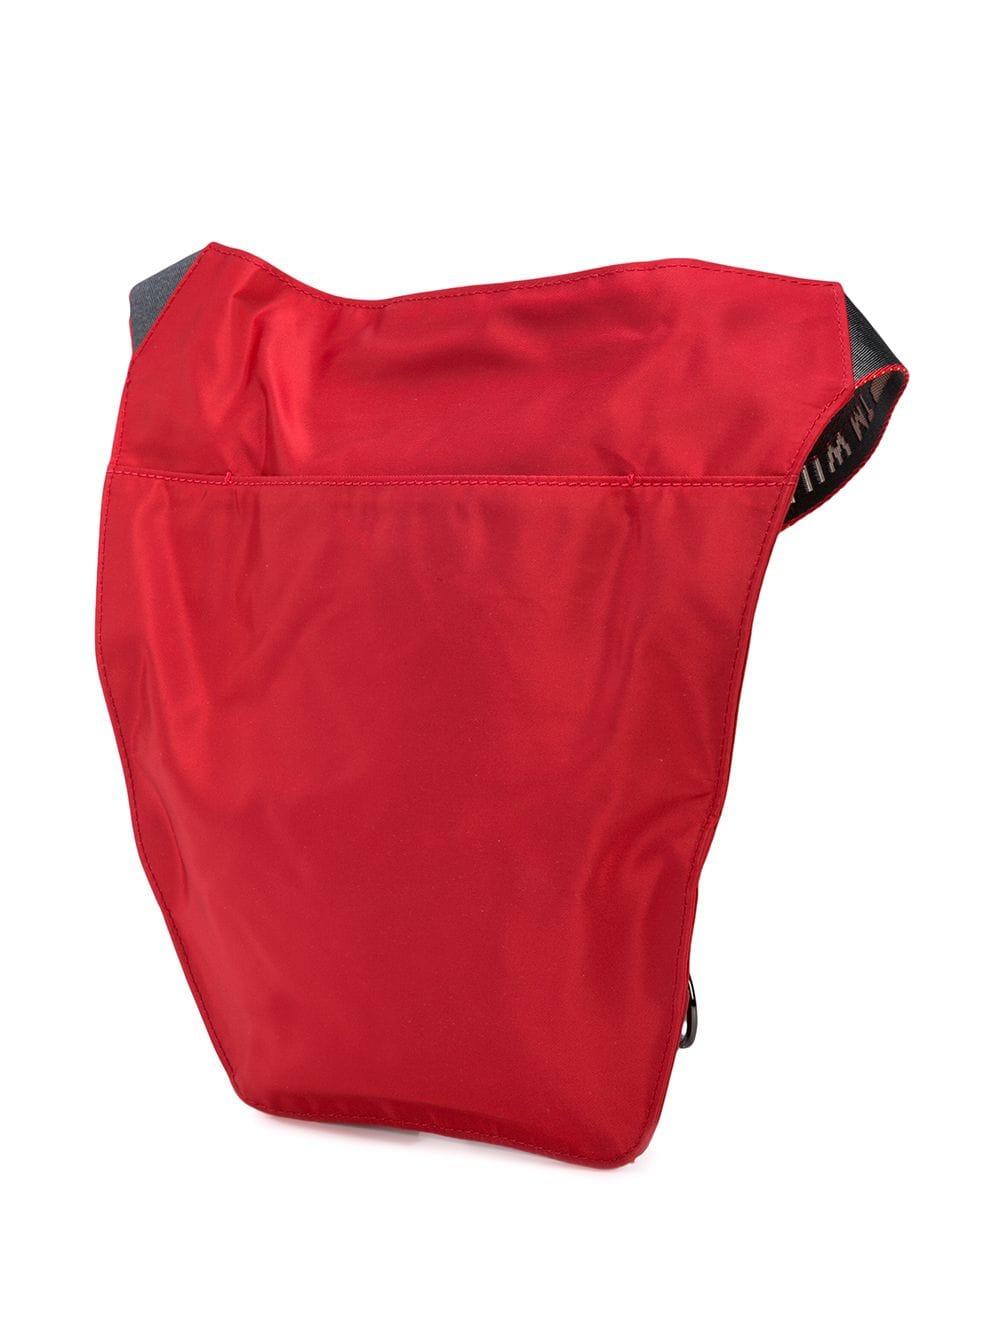 Off-White c/o Virgil Abloh Synthetic Industrial Strap Shoulder Bag in Red for Men - Lyst